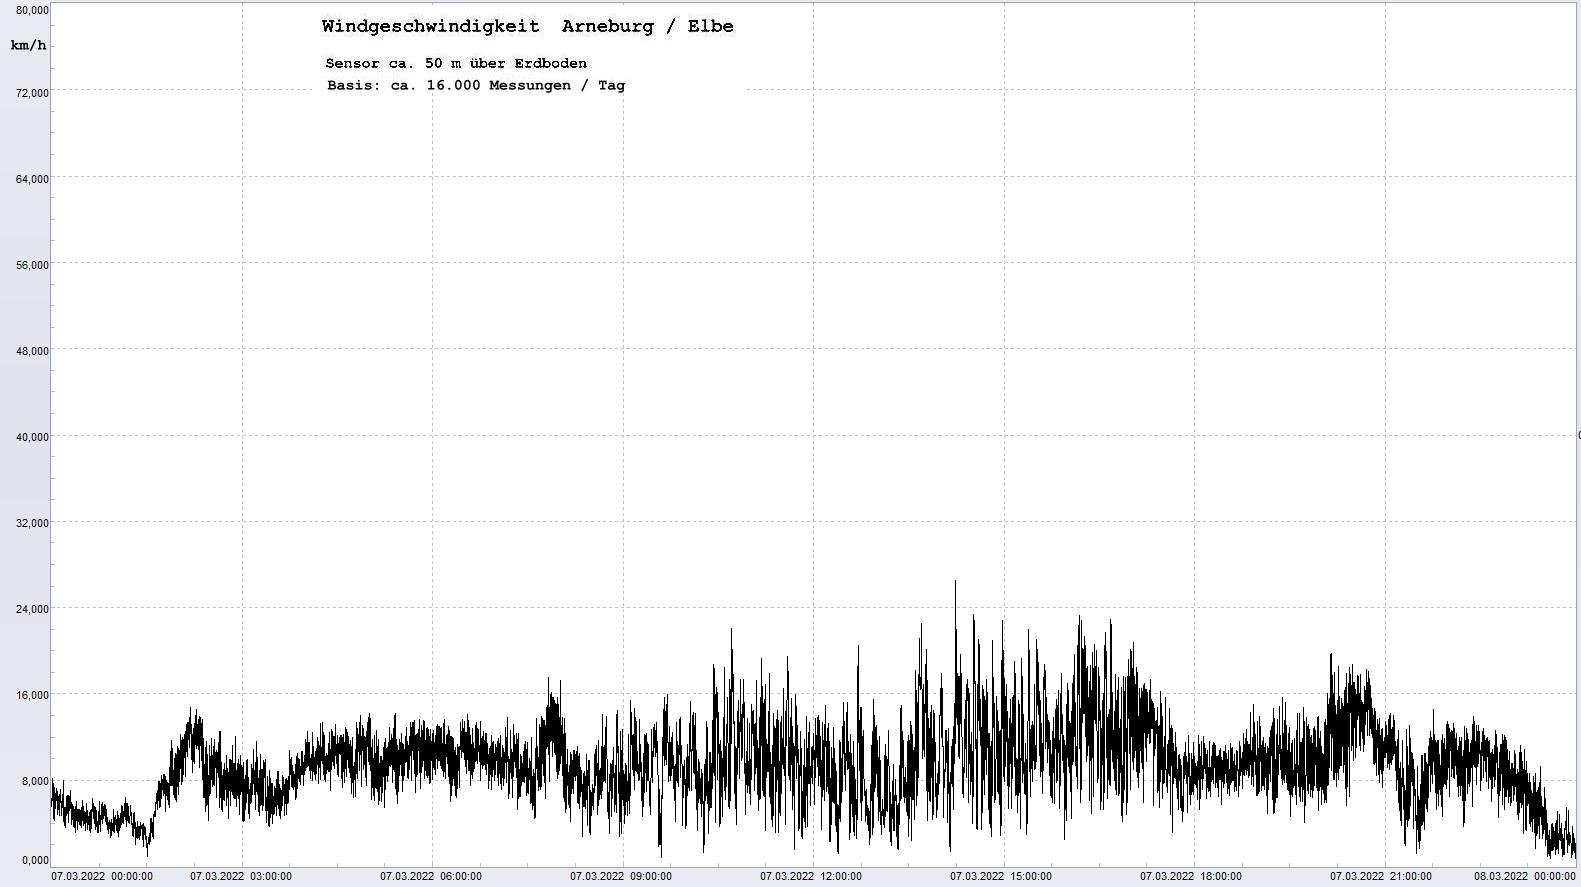 Arneburg Tages-Diagramm Winddaten, 07.03.2022
  Diagramm, Sensor auf Gebude, ca. 50 m ber Erdboden, Basis: 5s-Aufzeichnung